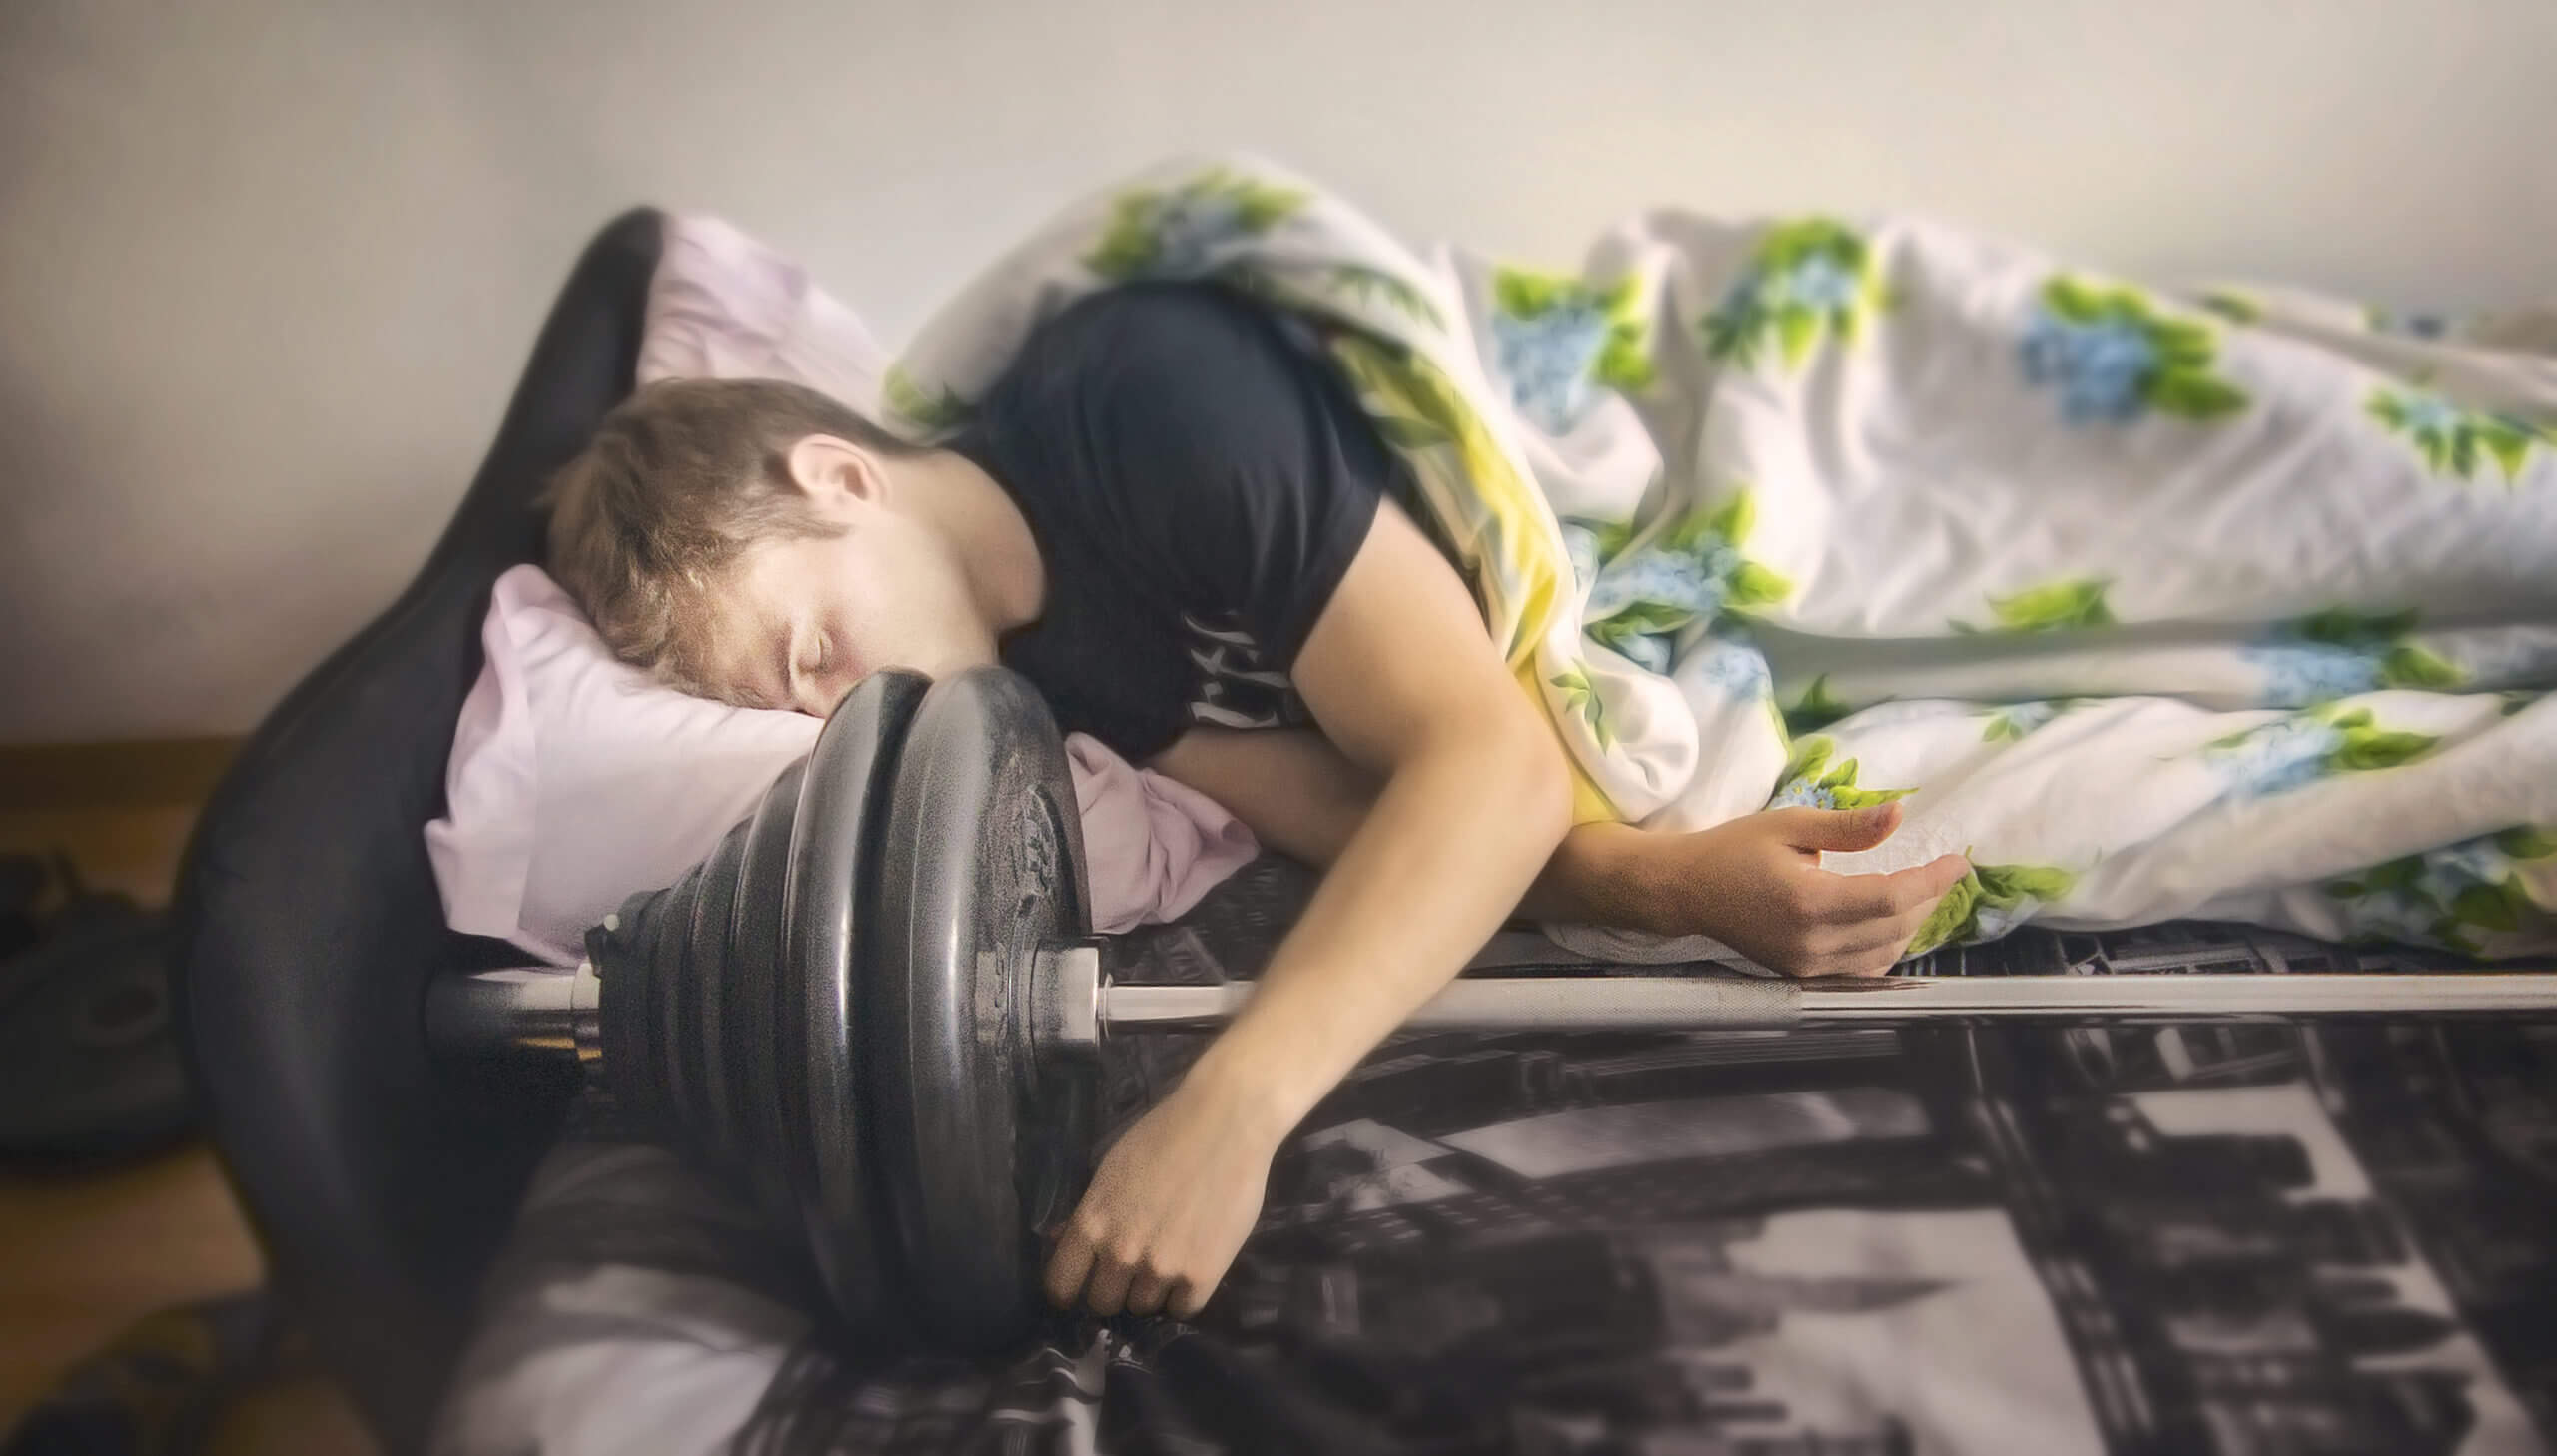 Giấc ngủ phát triển, phục hồi cơ bắp và chấn thương?